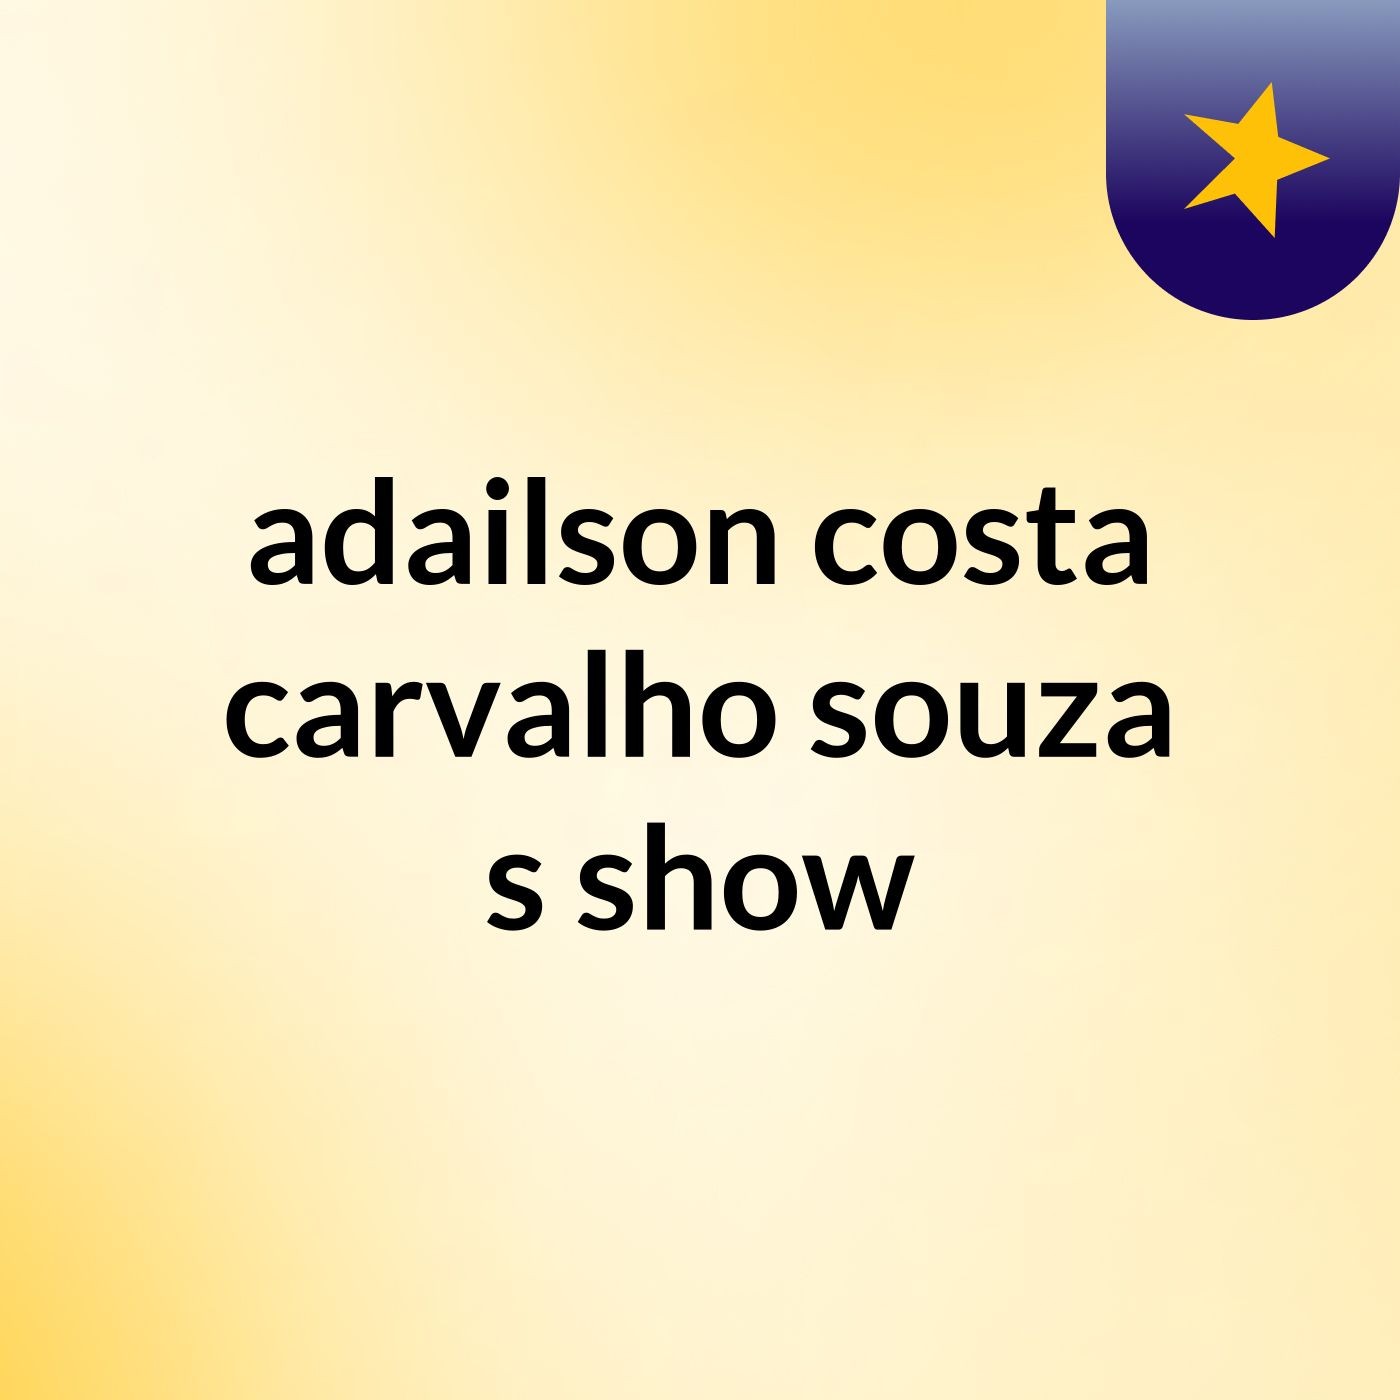 adailson costa carvalho souza's show